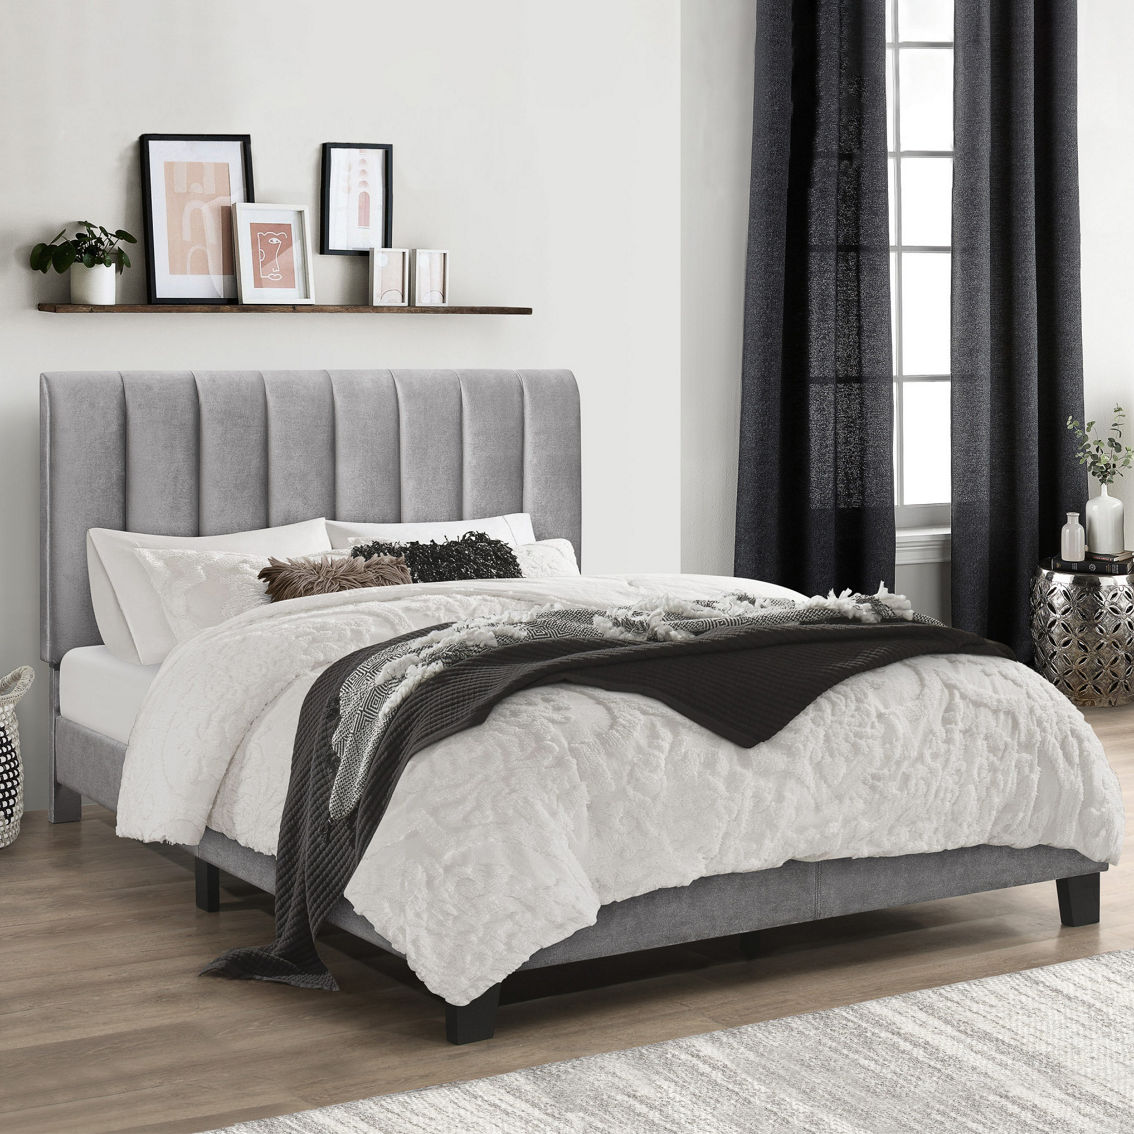 Hillsdale Furniture Crestone Upholstered Platform Bed, Silver/Gray - Image 3 of 3